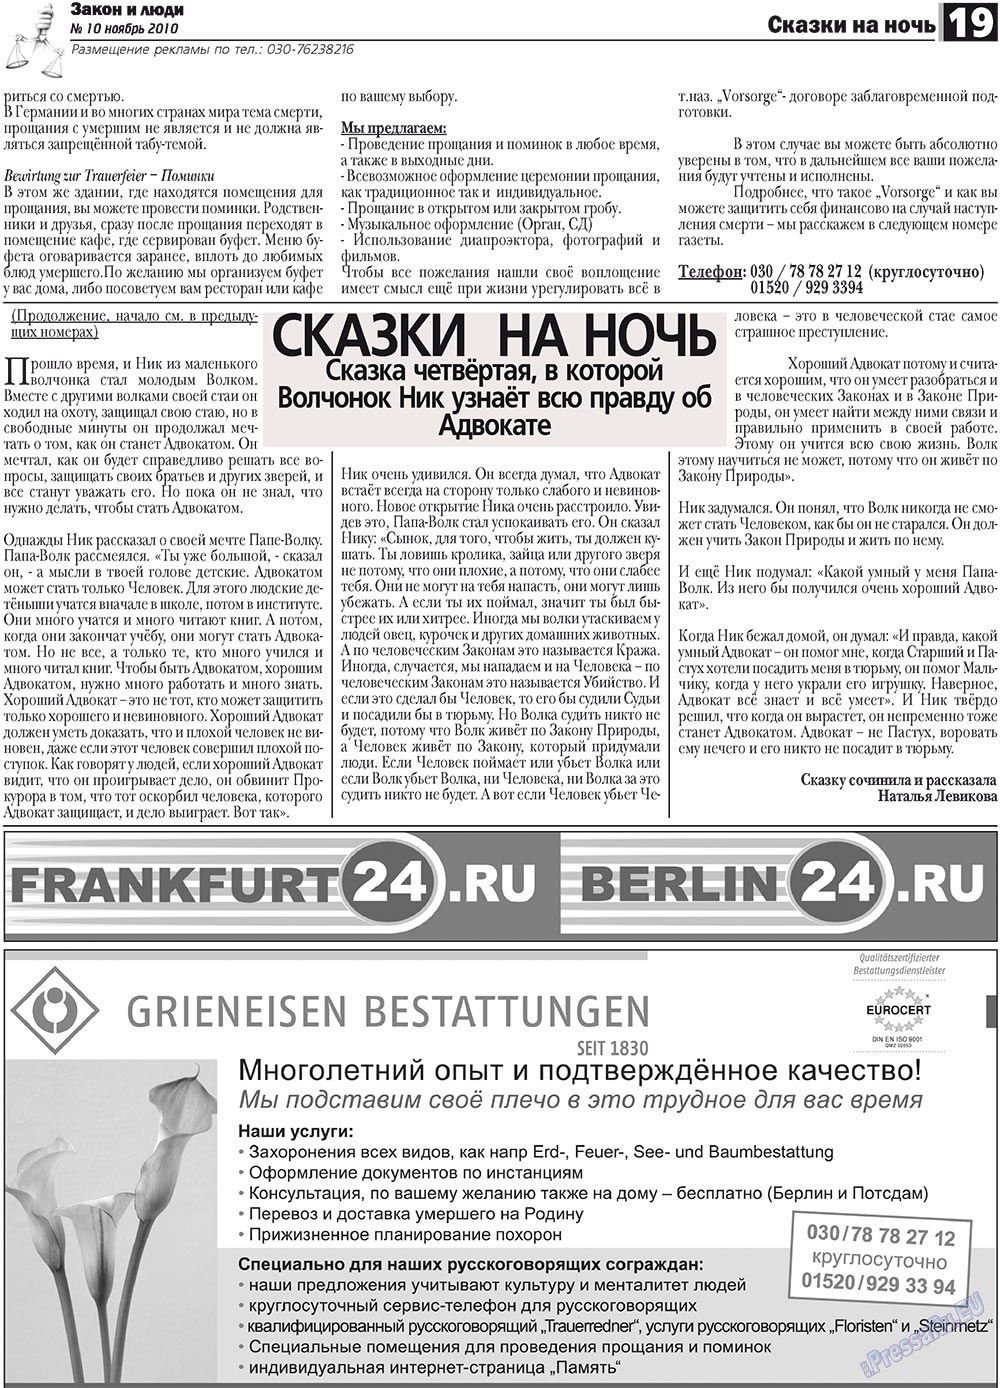 Закон и люди, газета. 2010 №10 стр.19